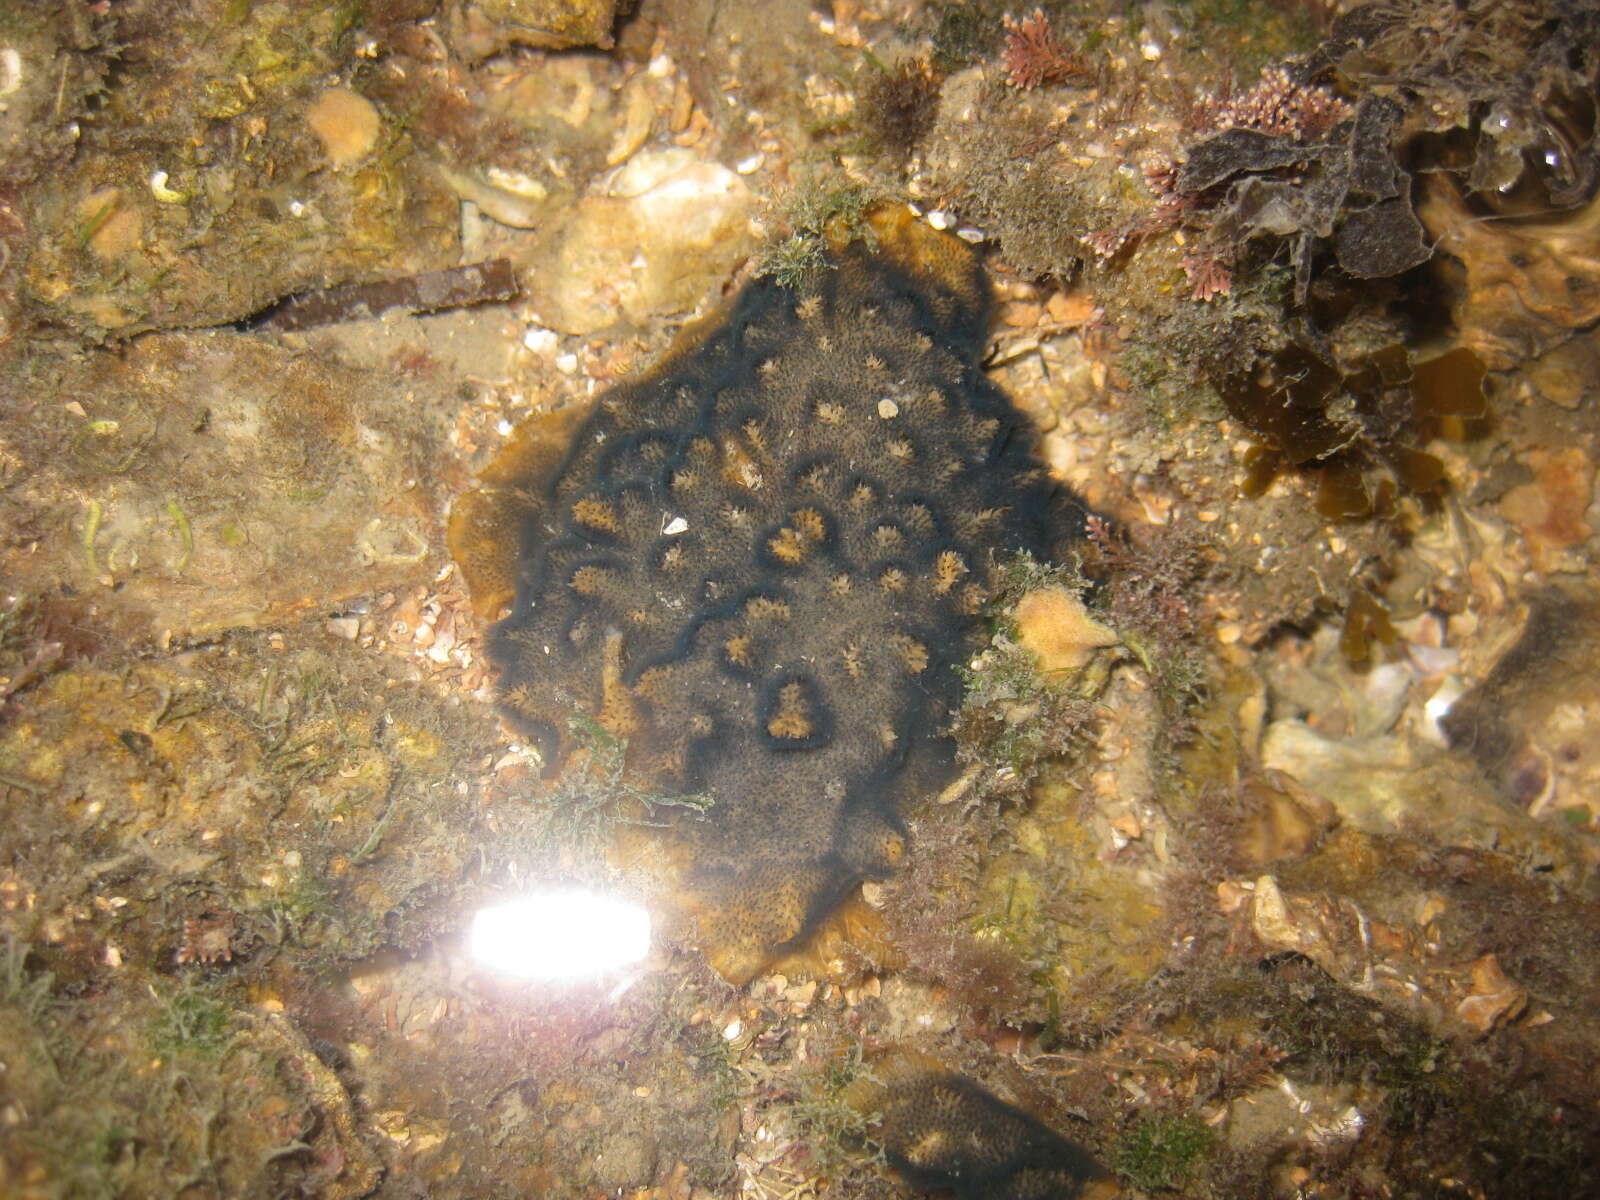 Sivun Celleporaria nodulosa (Busk 1881) kuva